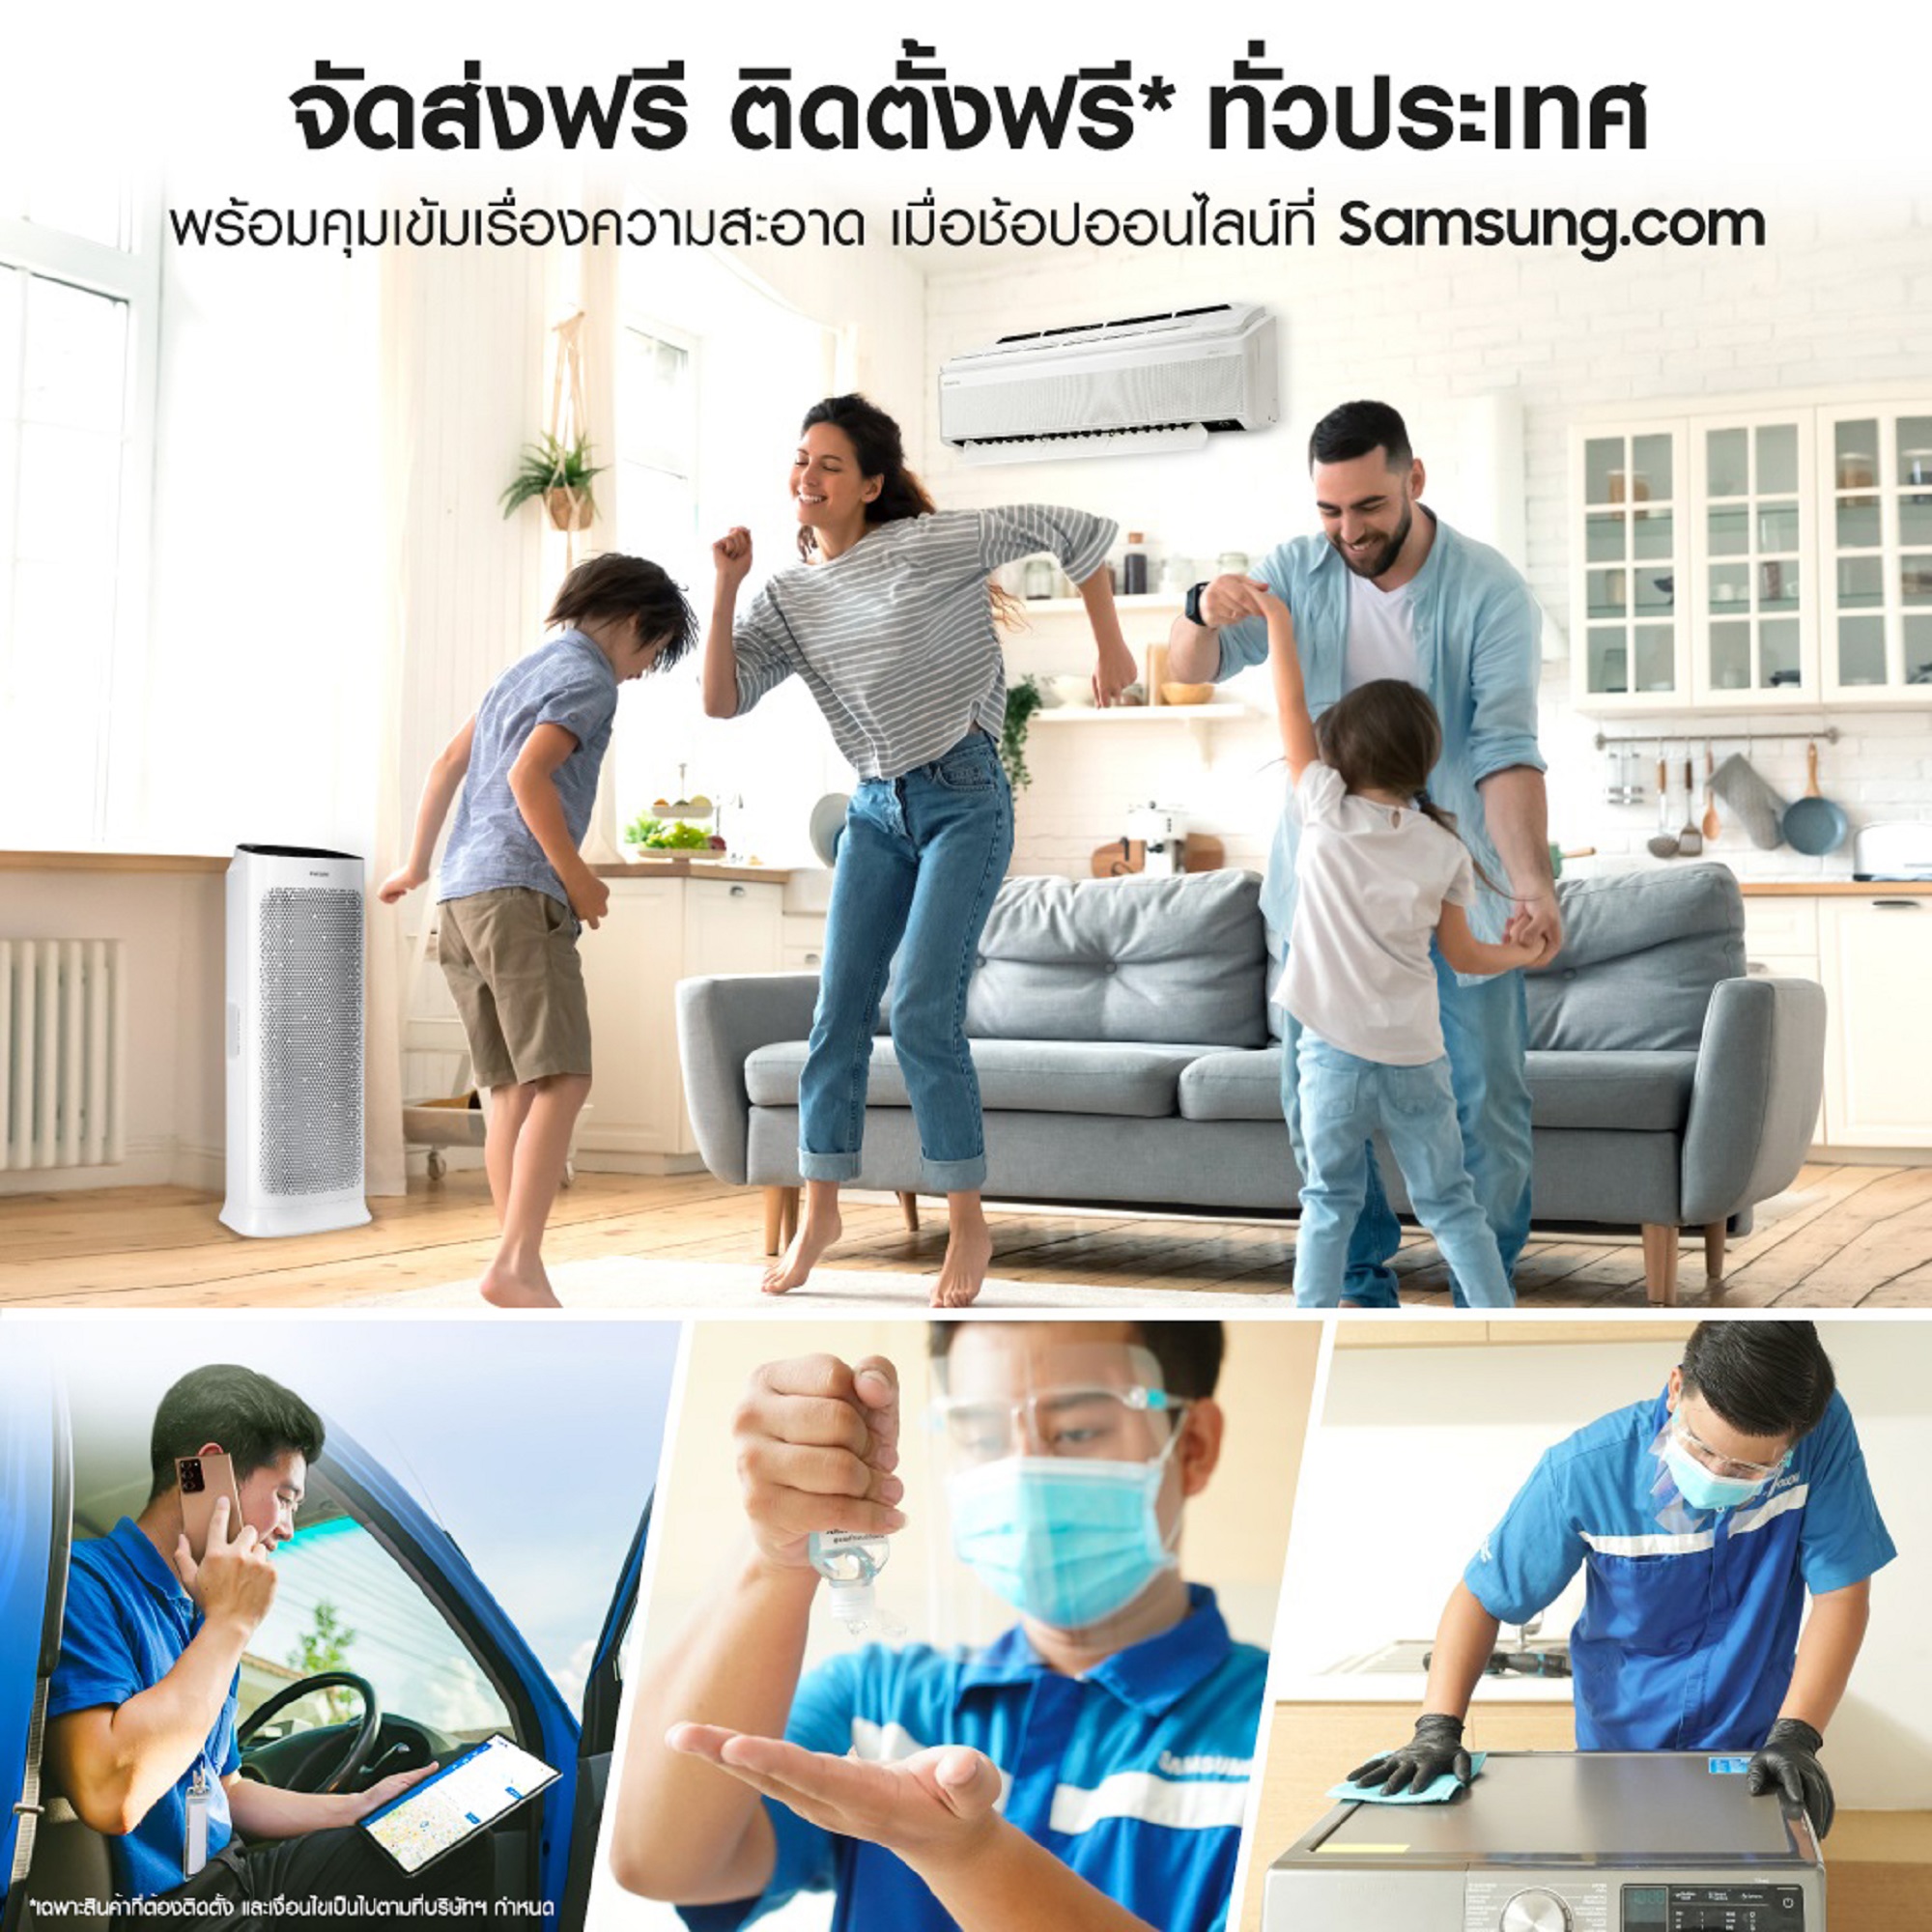 ซัมซุงแนะนำบริการใหม่ ส่งฟรี ติดตั้งฟรี ทั่วประเทศ ผ่าน Samsung.com เท่านั้น